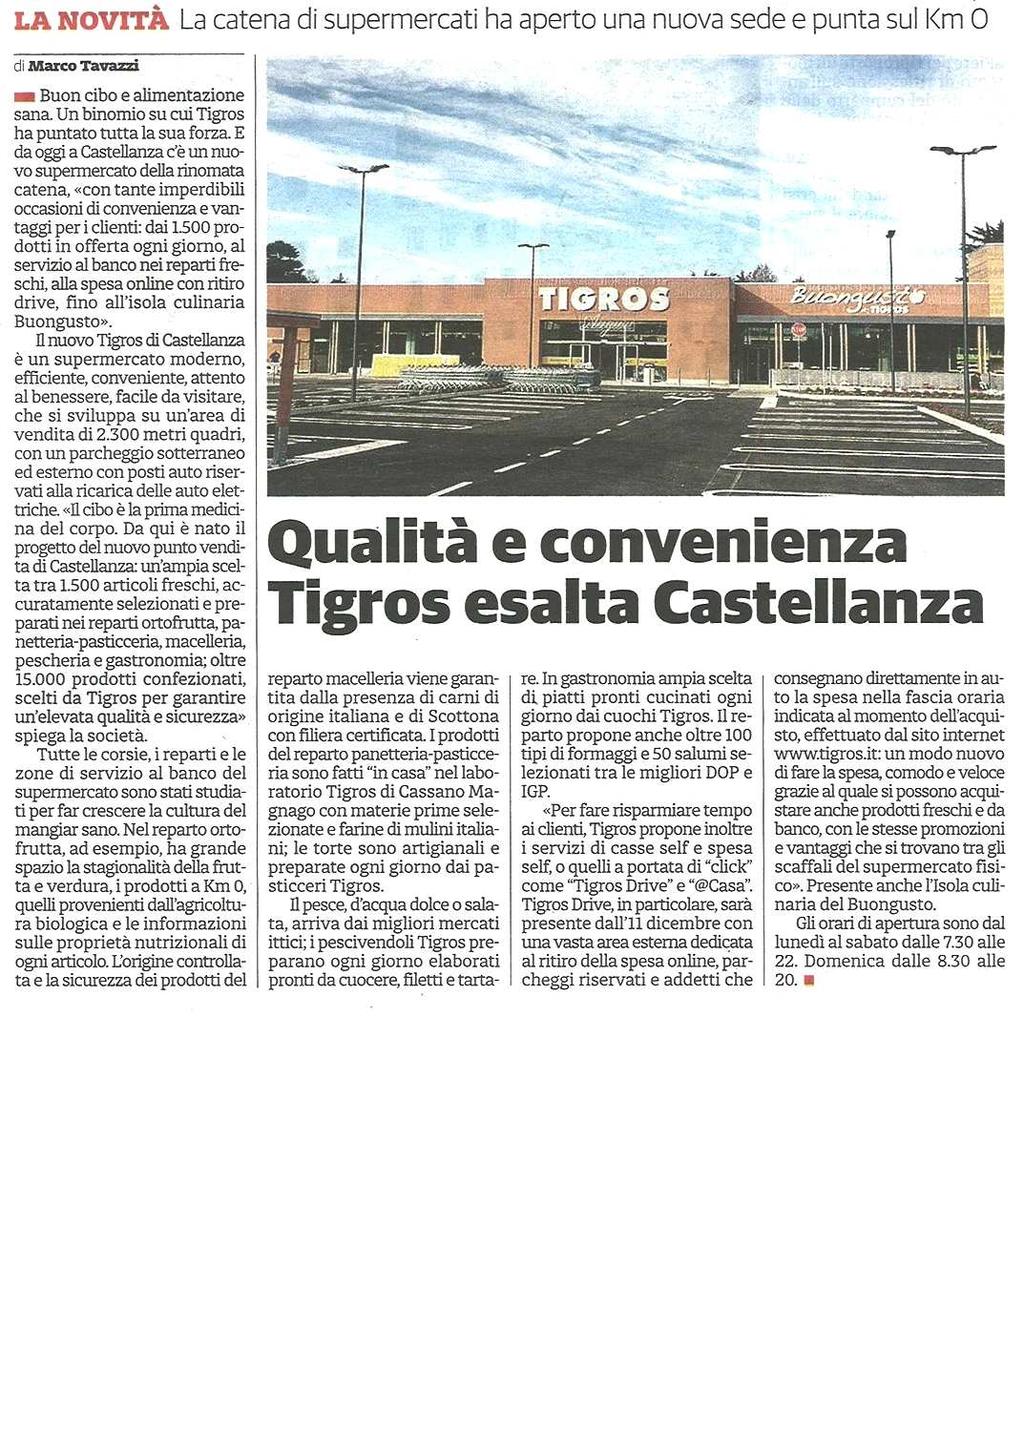 La novità / La catena di supermercati ha aperto una nuova sede e punta sul Km 0 QUALITÀ E CONVENIENZA TIGROS